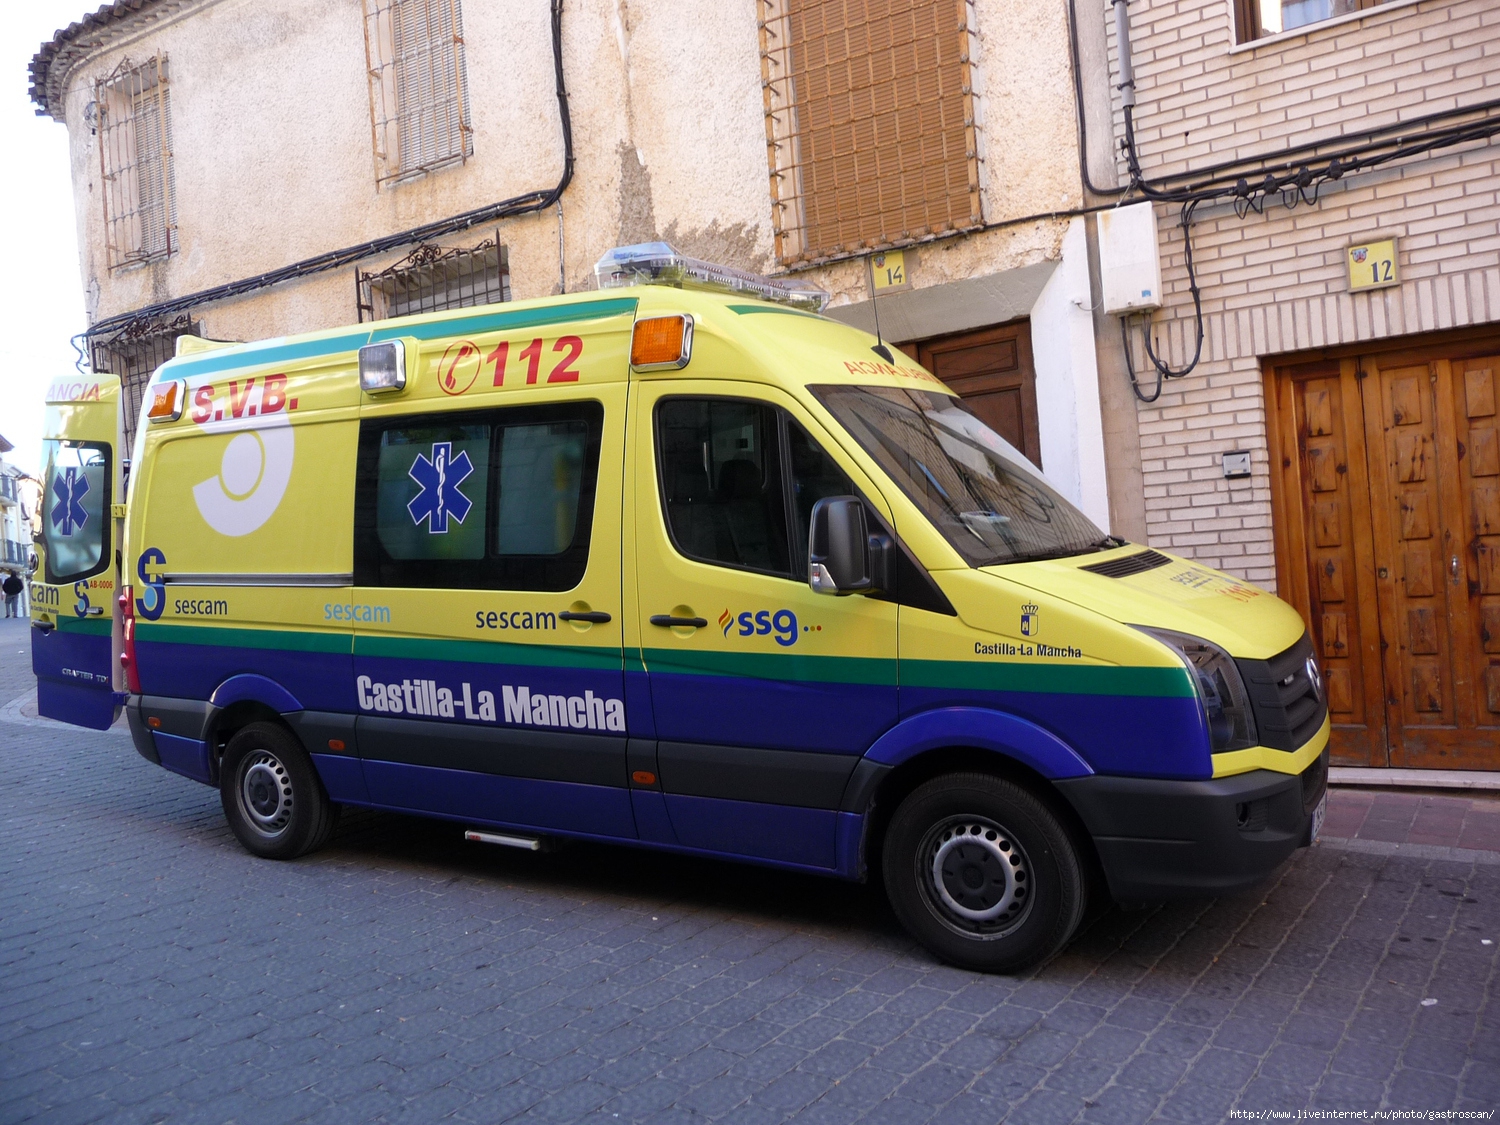   (. ambulancia)  , Castilla-la Mancha,  Albacete